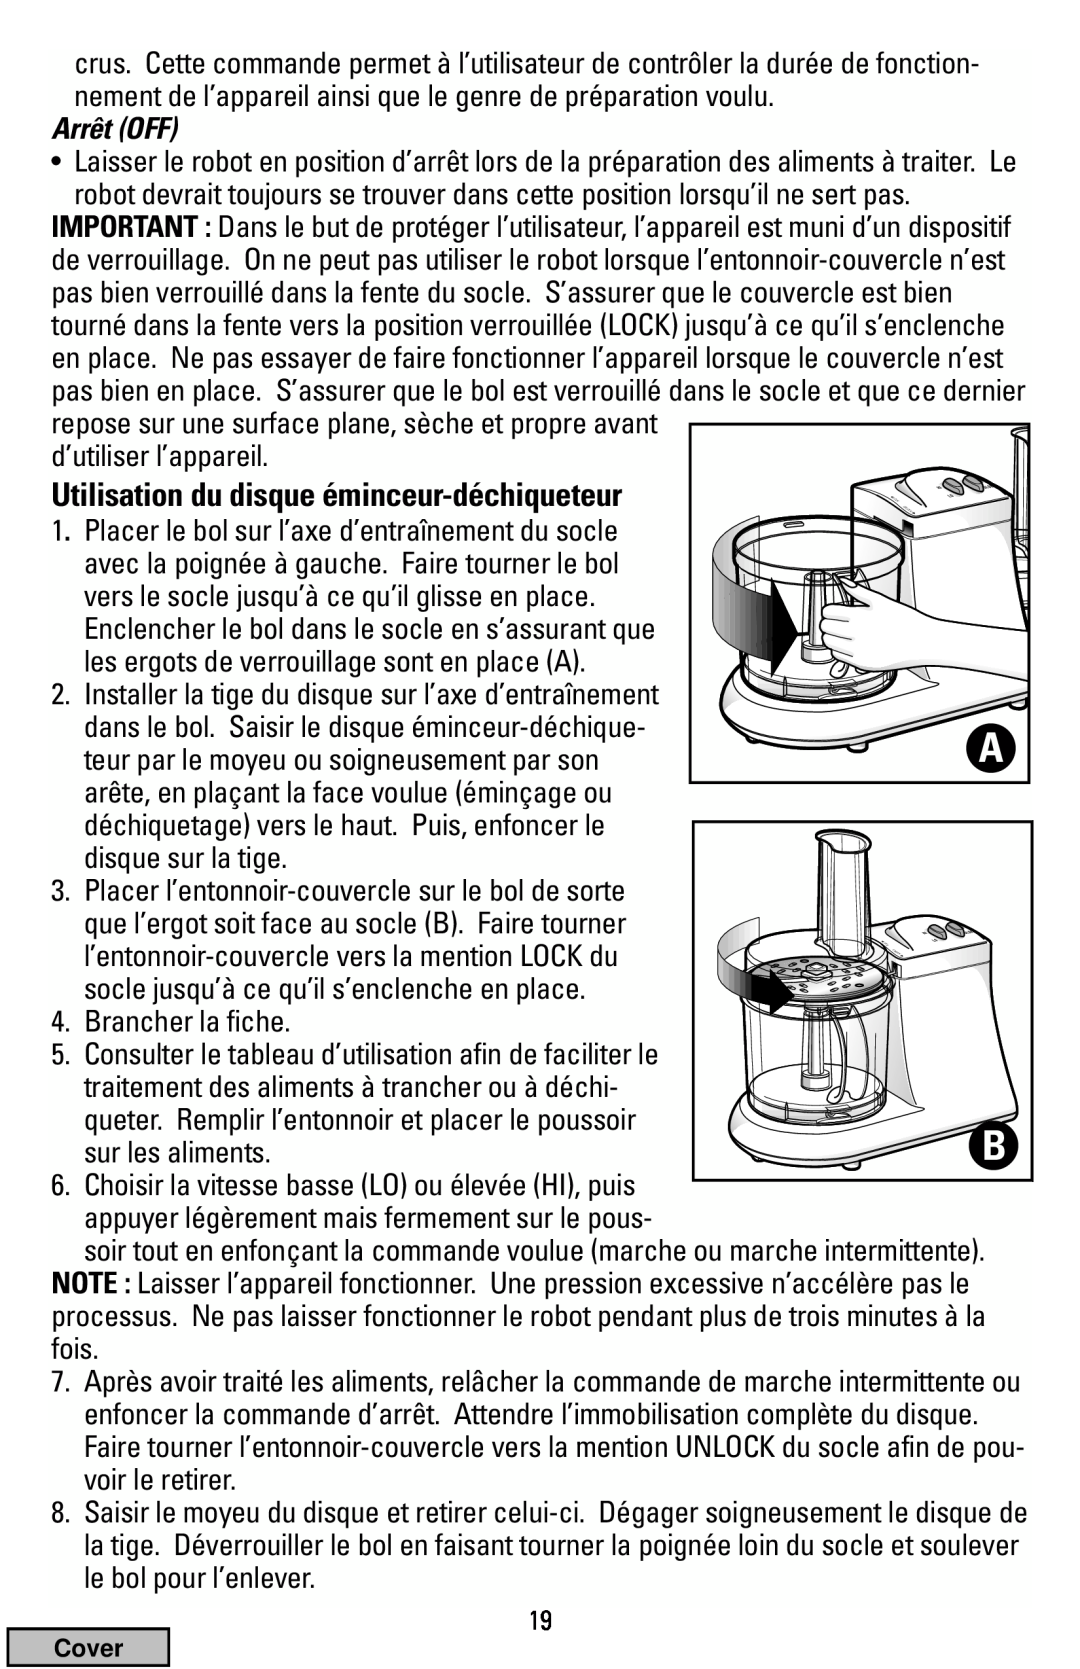 Black & Decker FP1200 manual Utilisation du disque éminceur-déchiqueteur, Arrêt OFF 